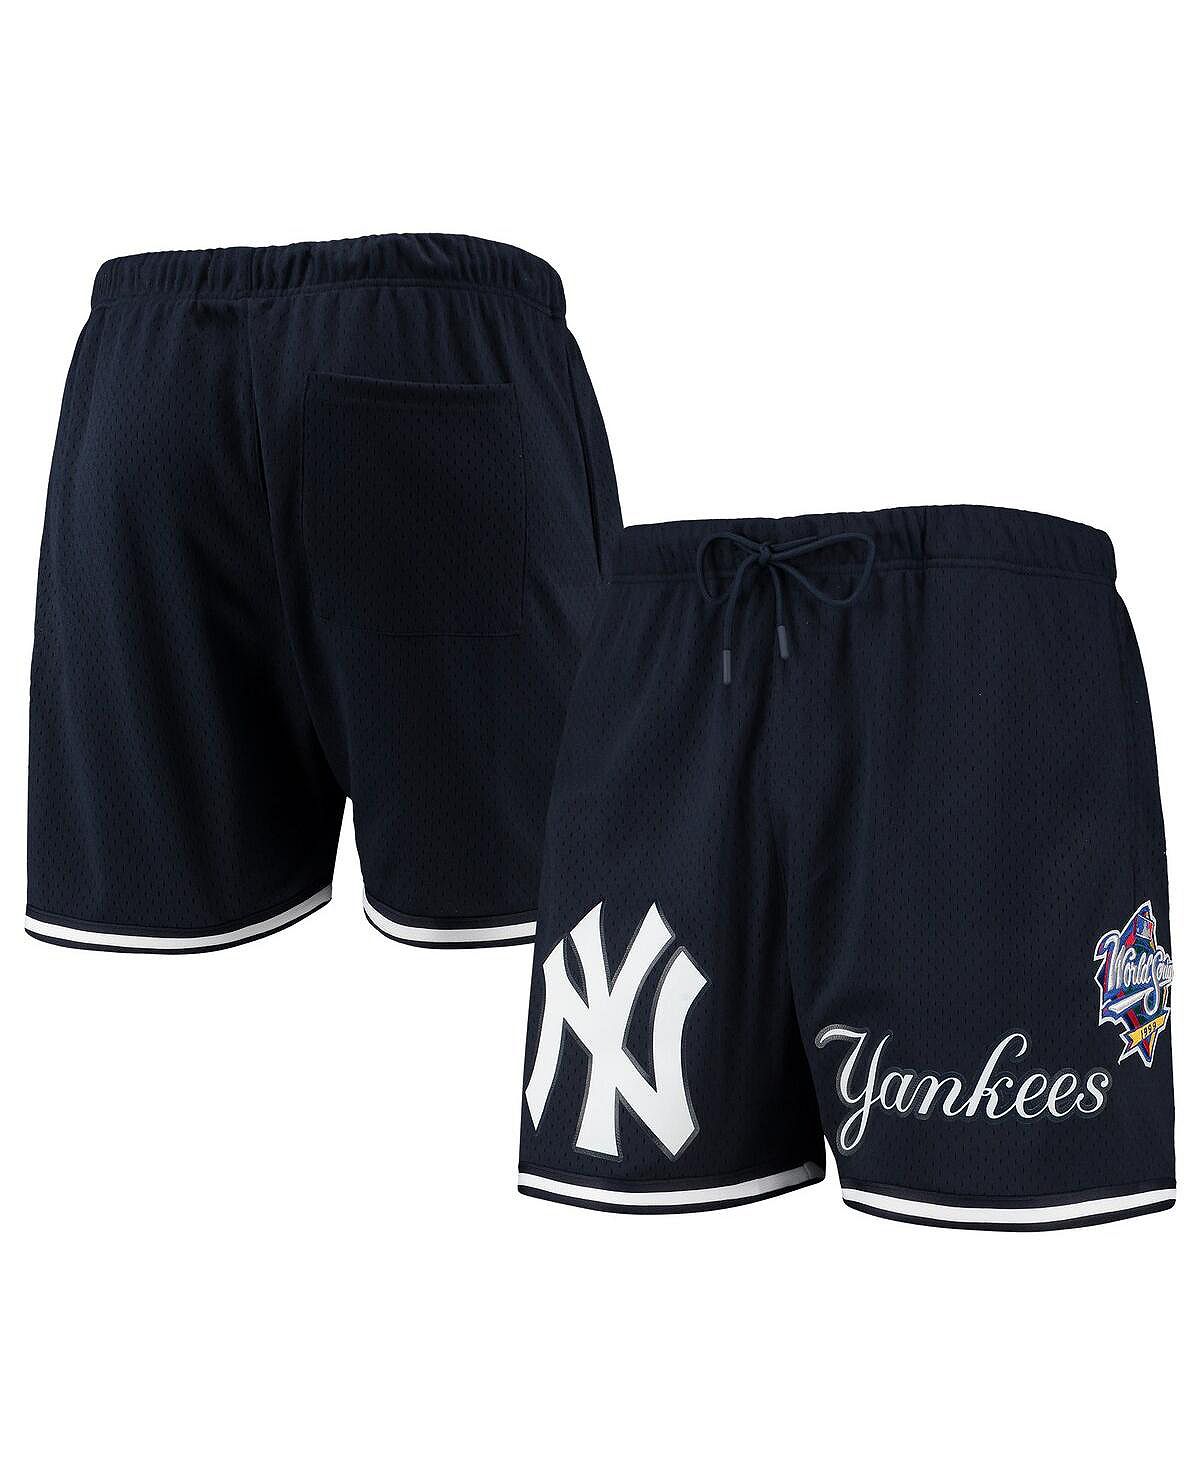 Мужские темно-синие сетчатые шорты New York Yankees World Series 1999 Pro Standard мини платье икат с поясом allison new york цвет ikat haze